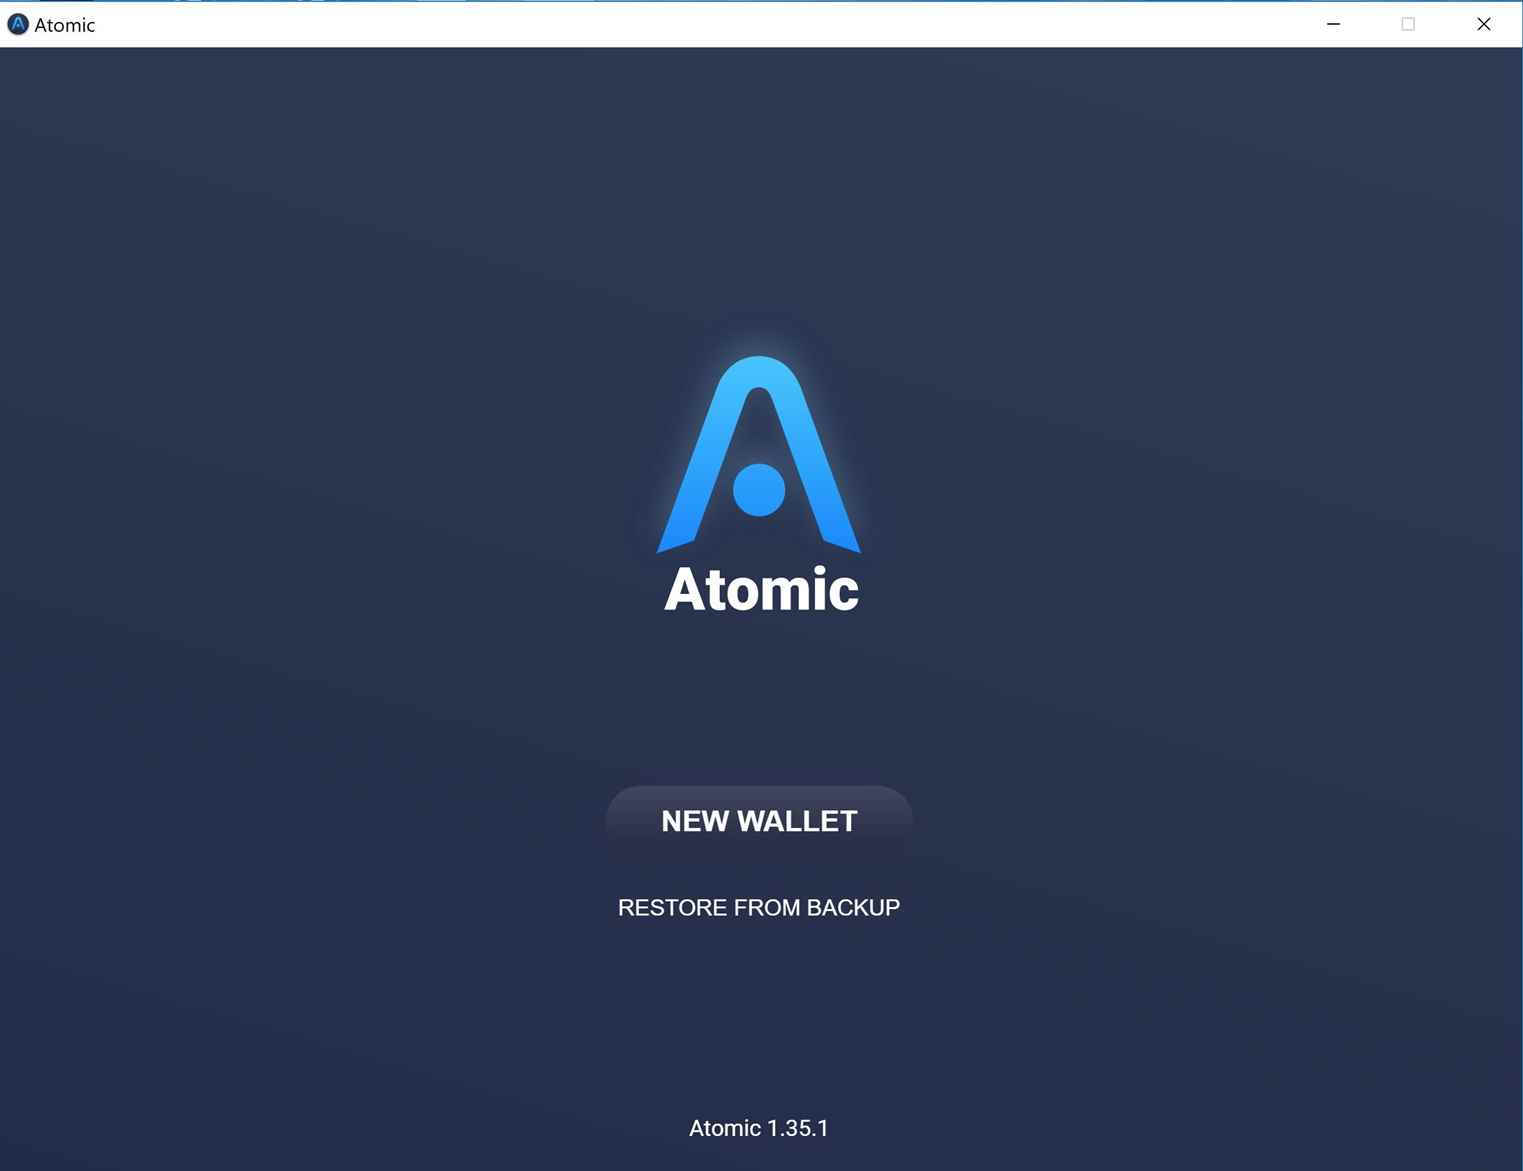 آموزش نصب و ساخت کیف پول اتمیک والت (Atomic Wallet)